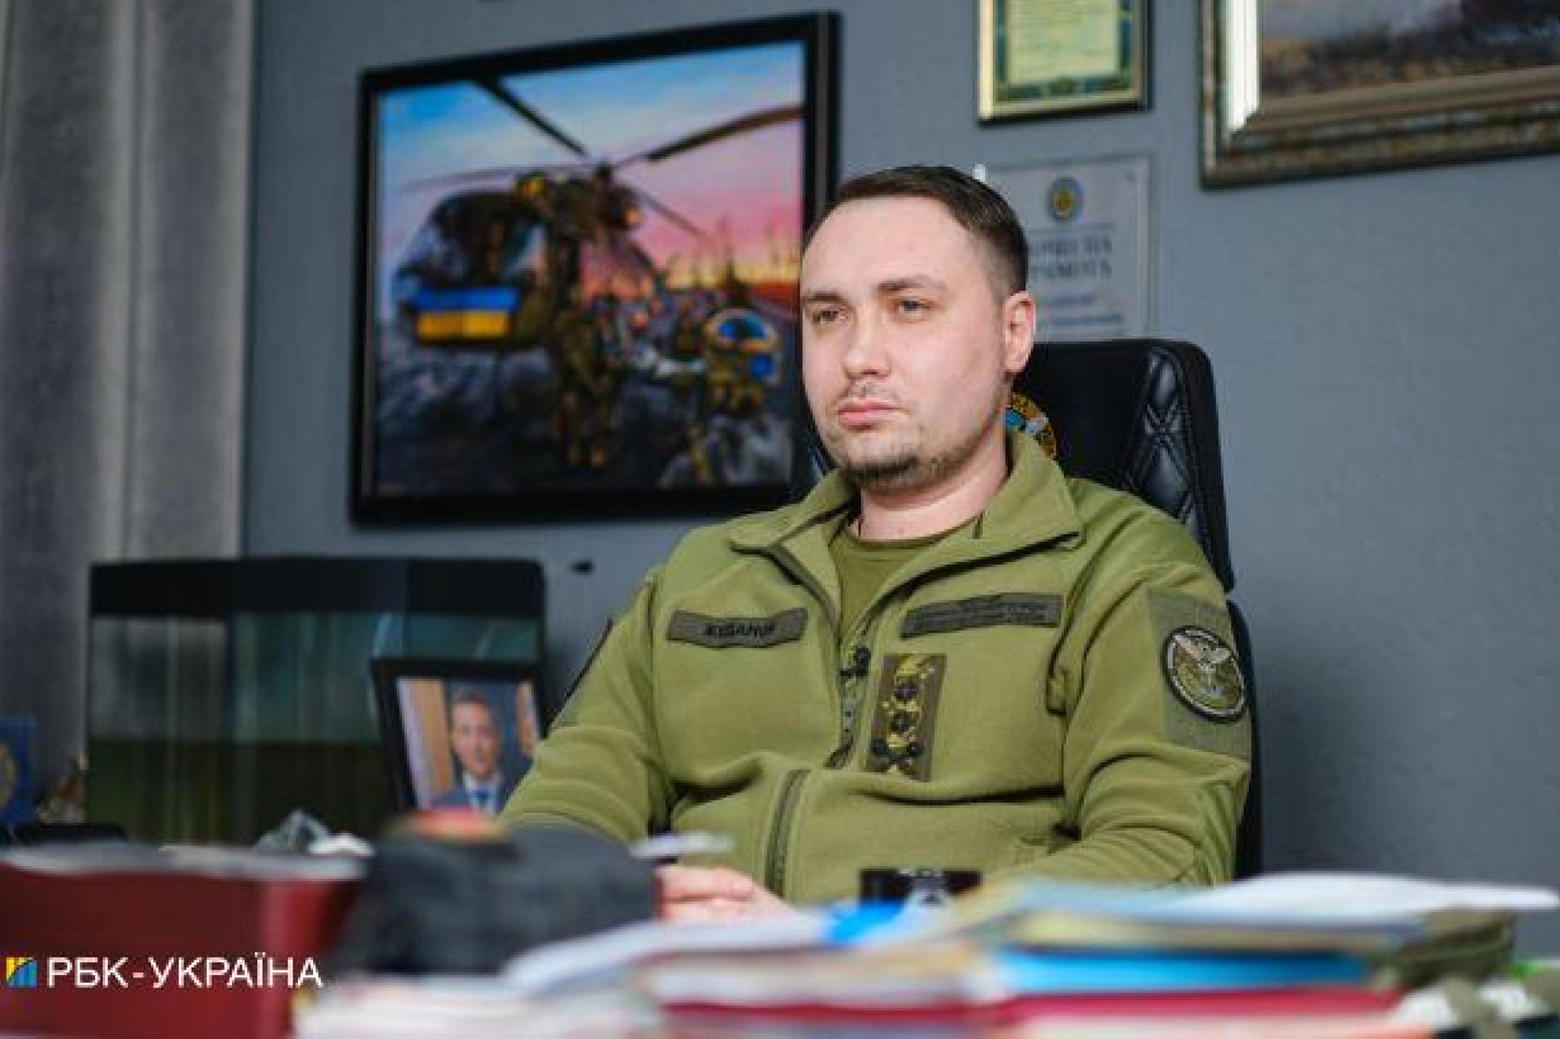 Dmytro Budanov, capo dei servizi segreti militari ucraini